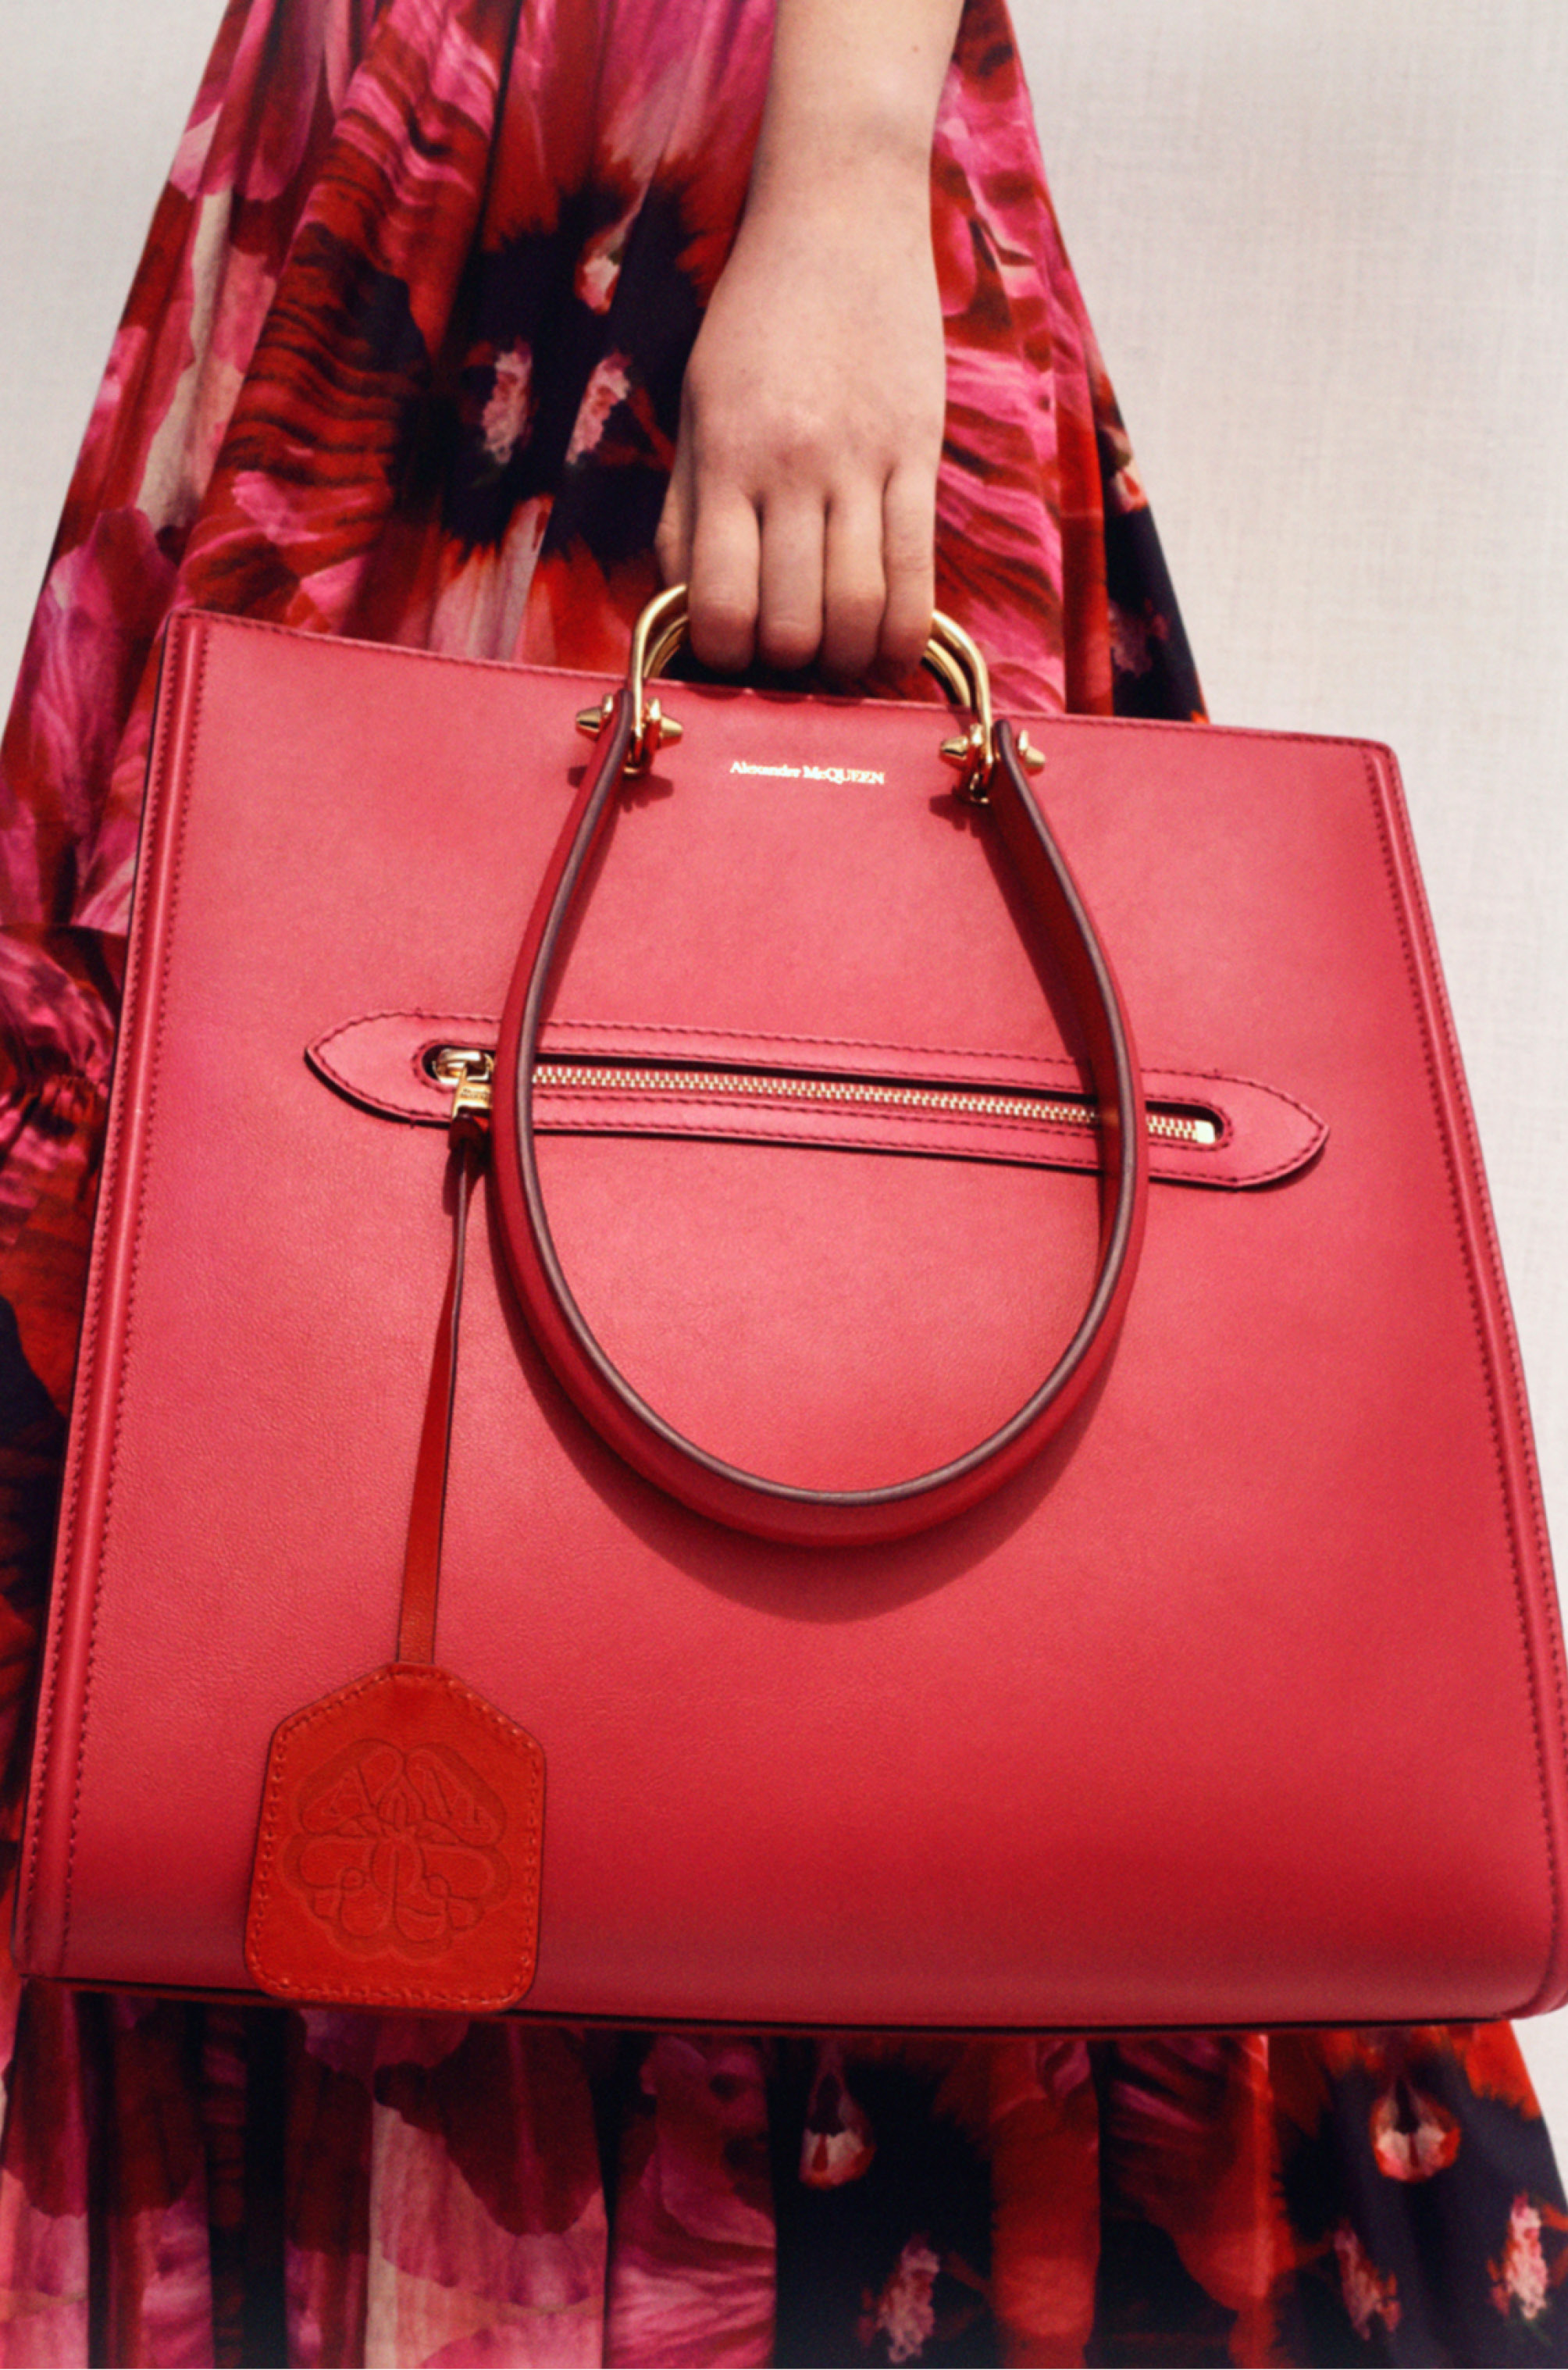 Alexander McQueen представил новую линию сумок The Story Bag (фото 8)